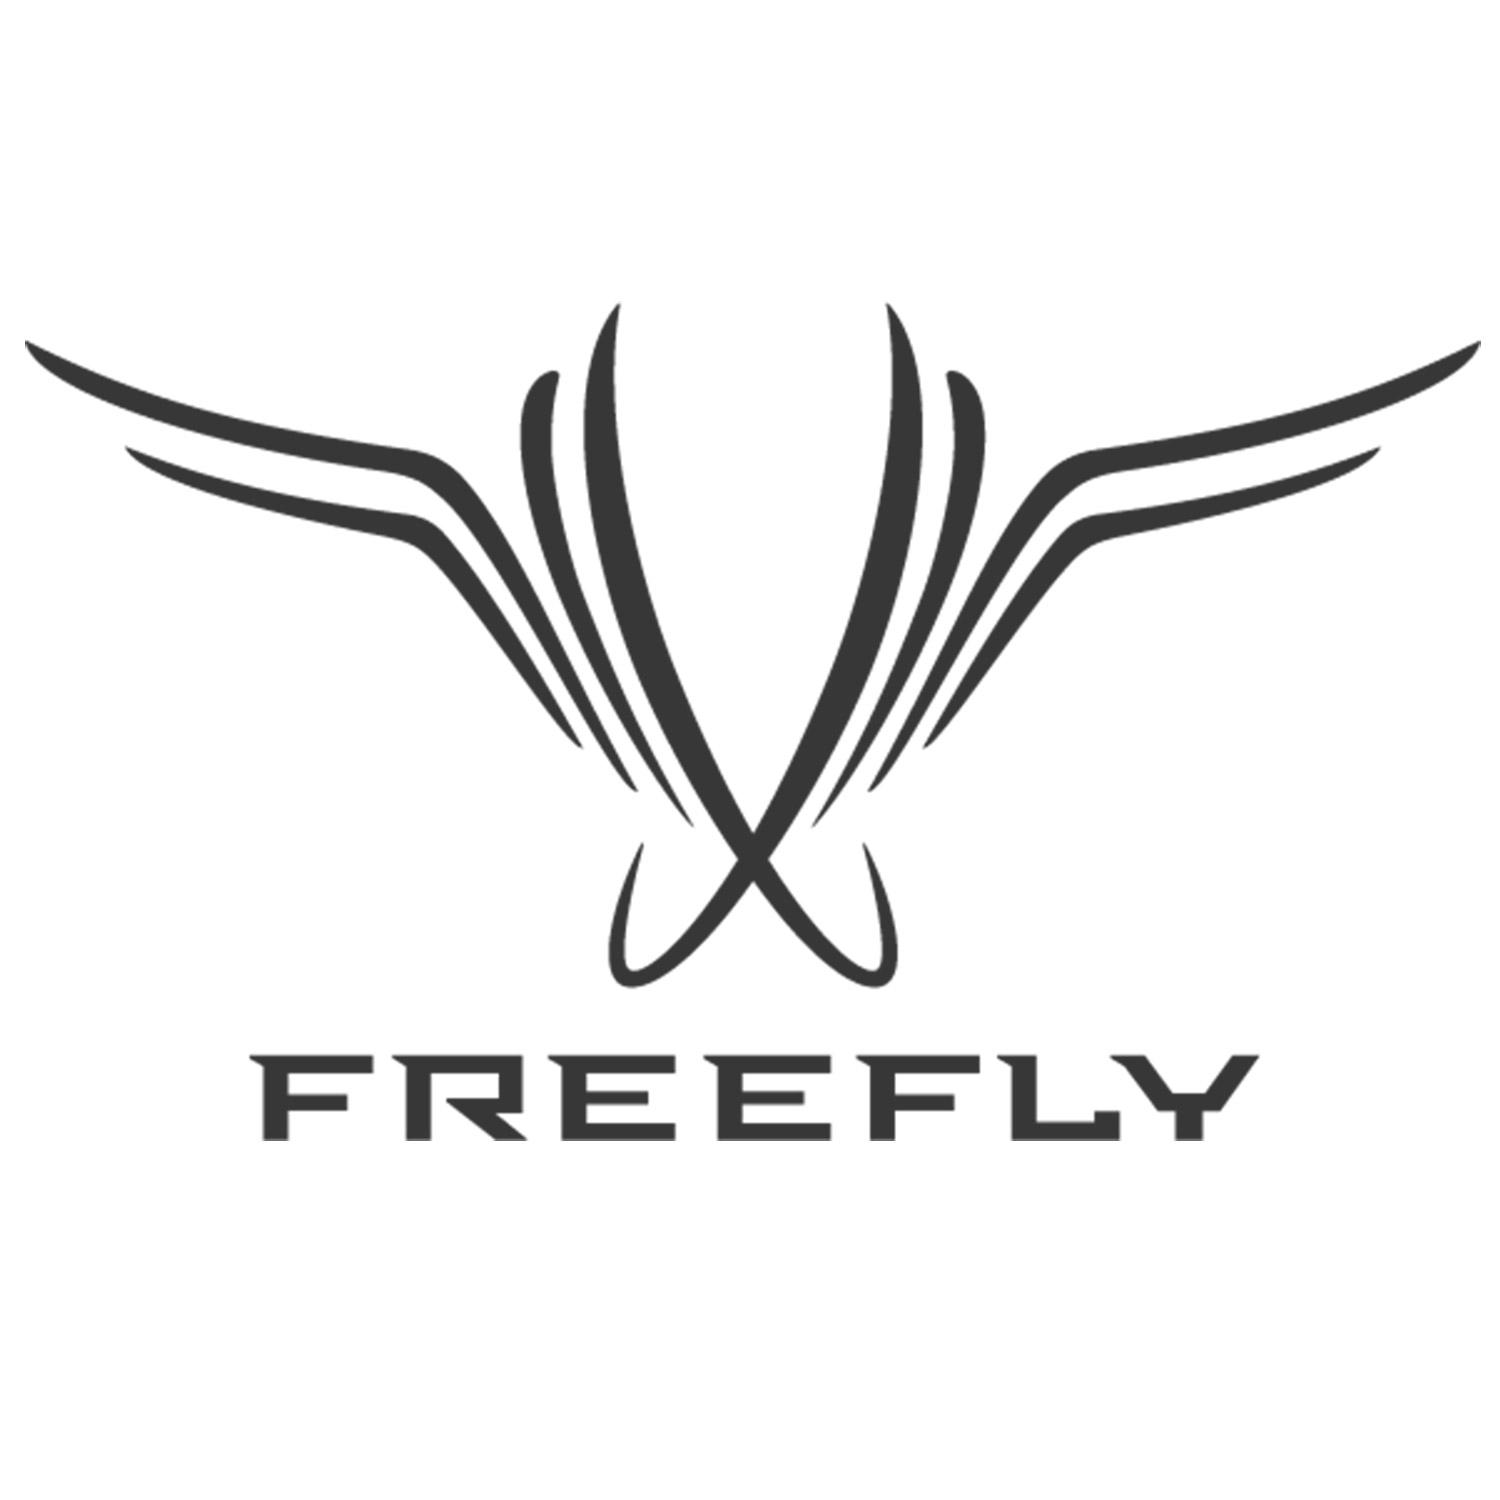 Freefly logo.jpg